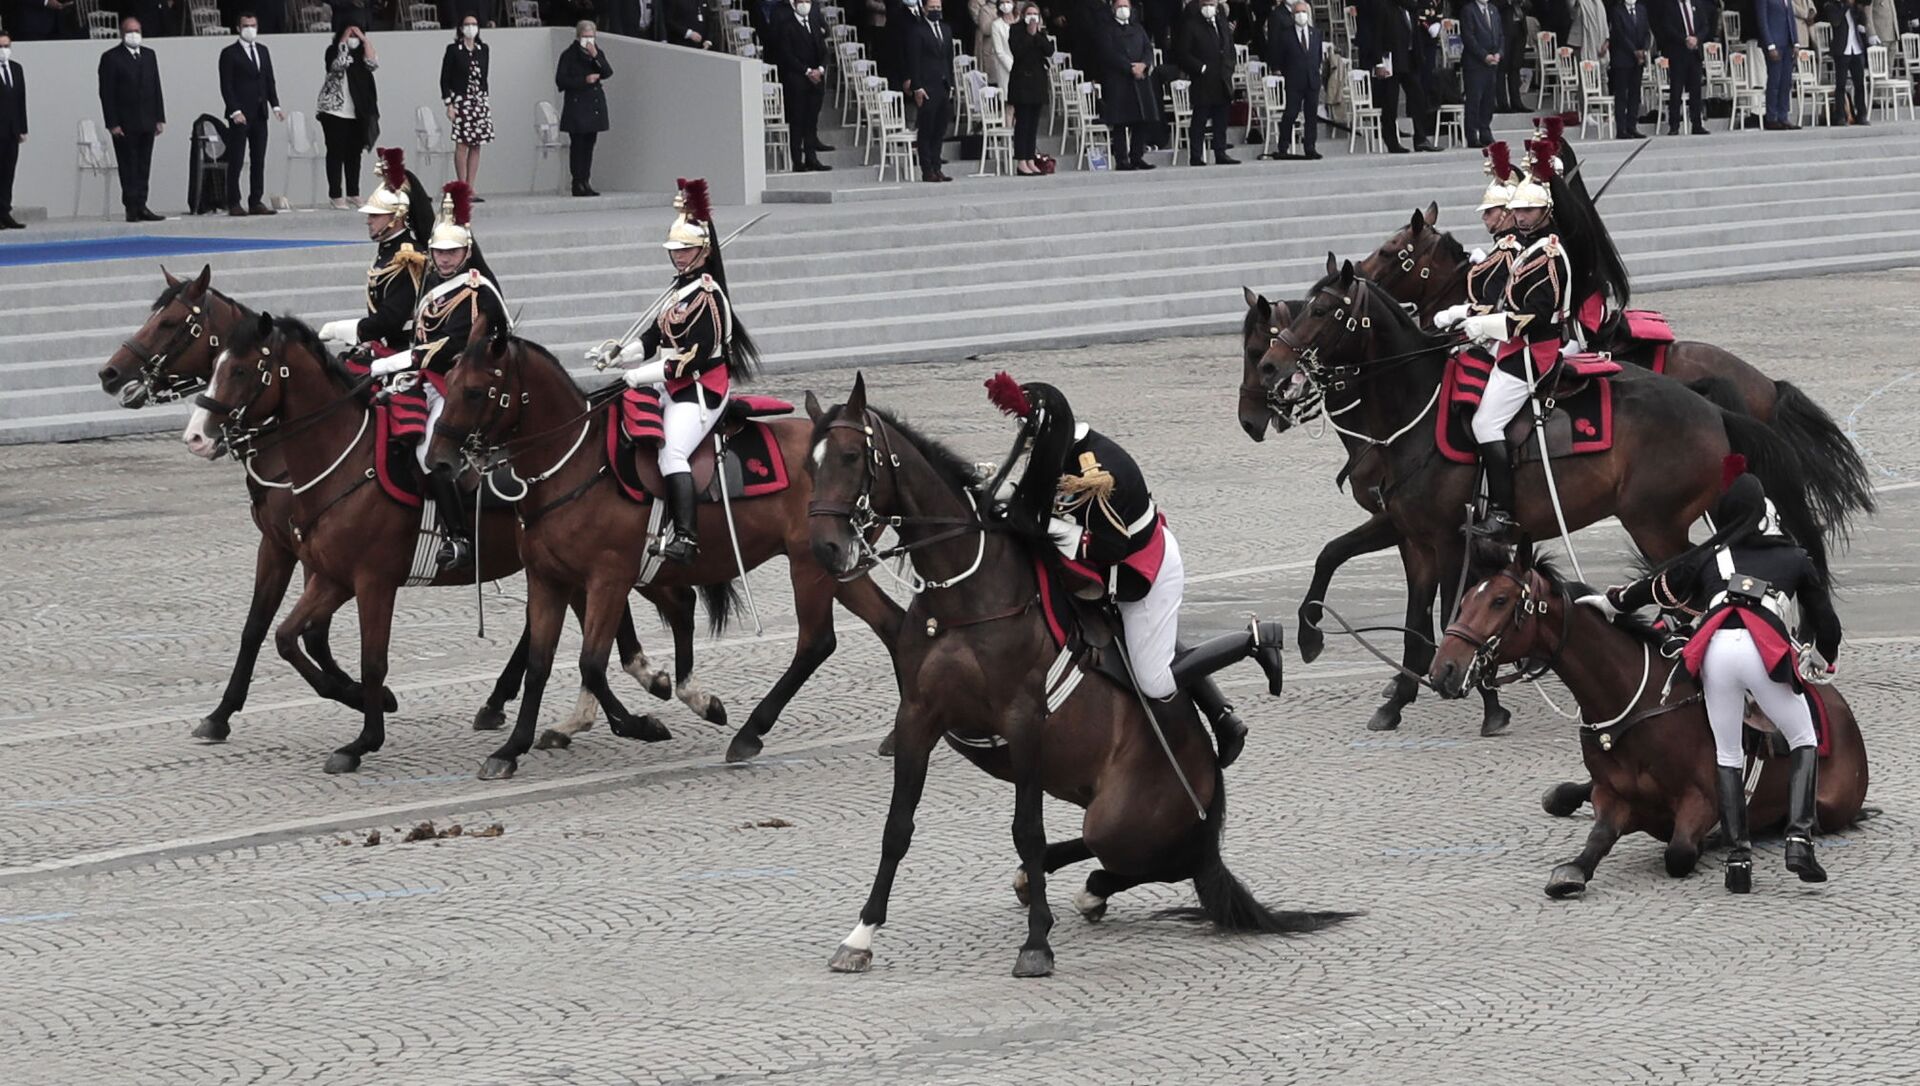 Два республиканских гвардейца восстанавливают контроль над своими лошадьми после падения во время ежегодного парада в честь Дня взятия Бастилии в Париже  - Sputnik Afrique, 1920, 14.07.2021